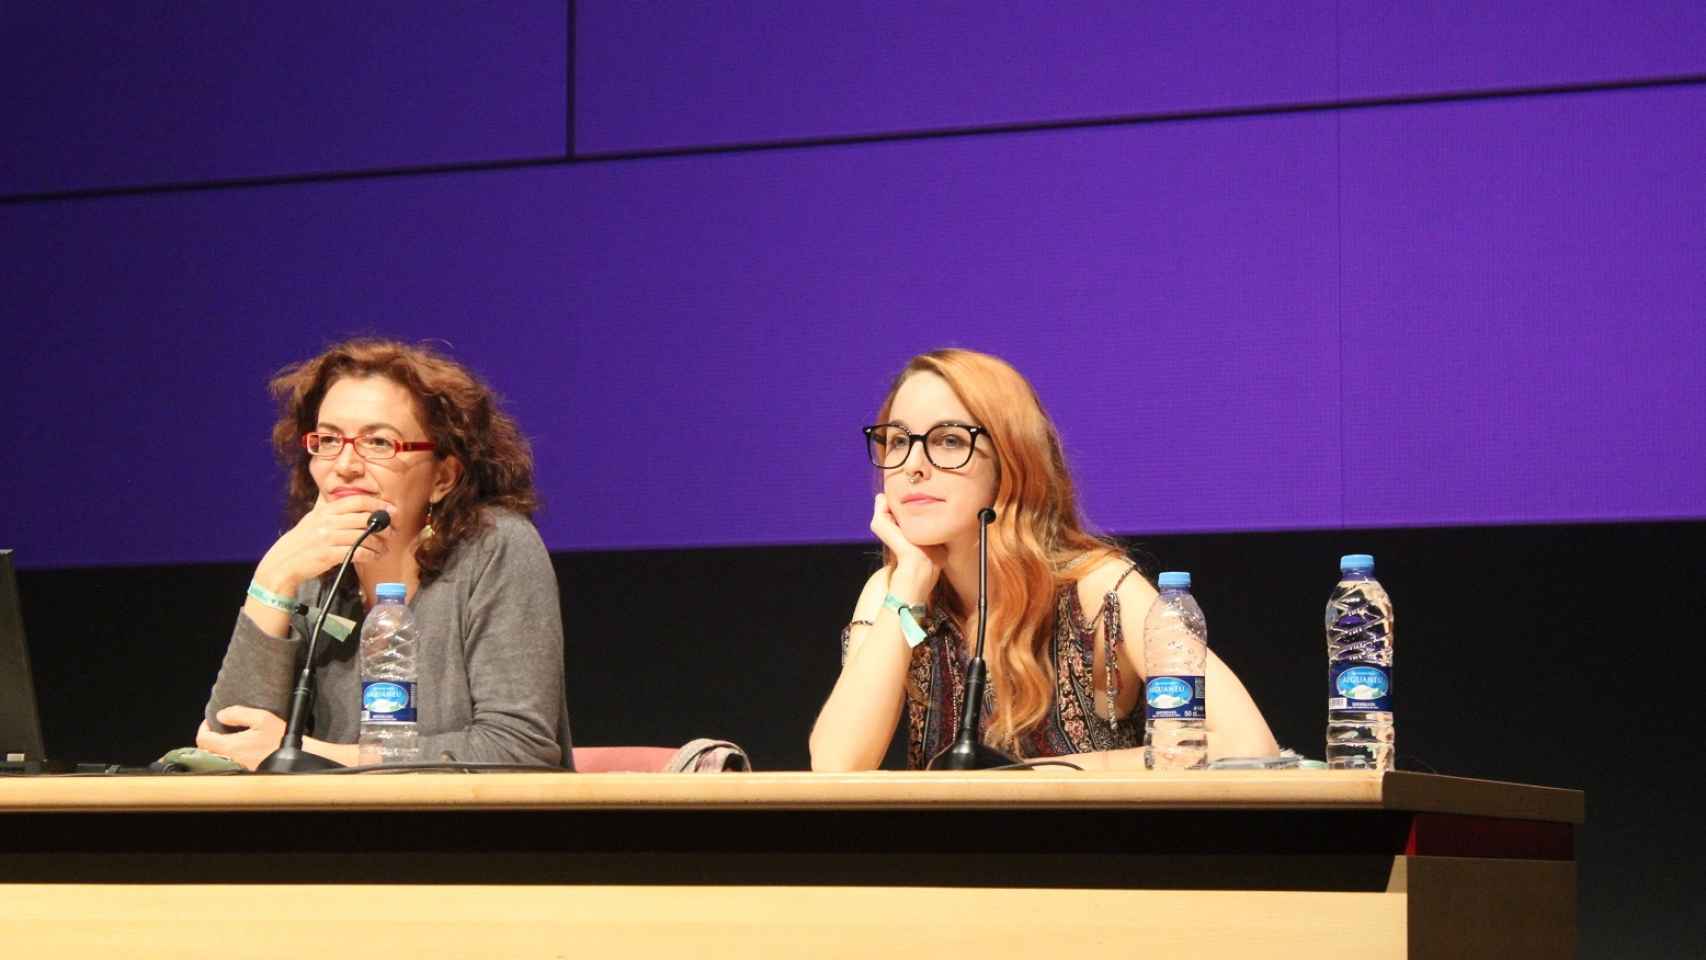 La actriz porno Amarna Miller participó en una charla sobre Sexo y Cannabis, moderada por la periodista Virginia Montañés